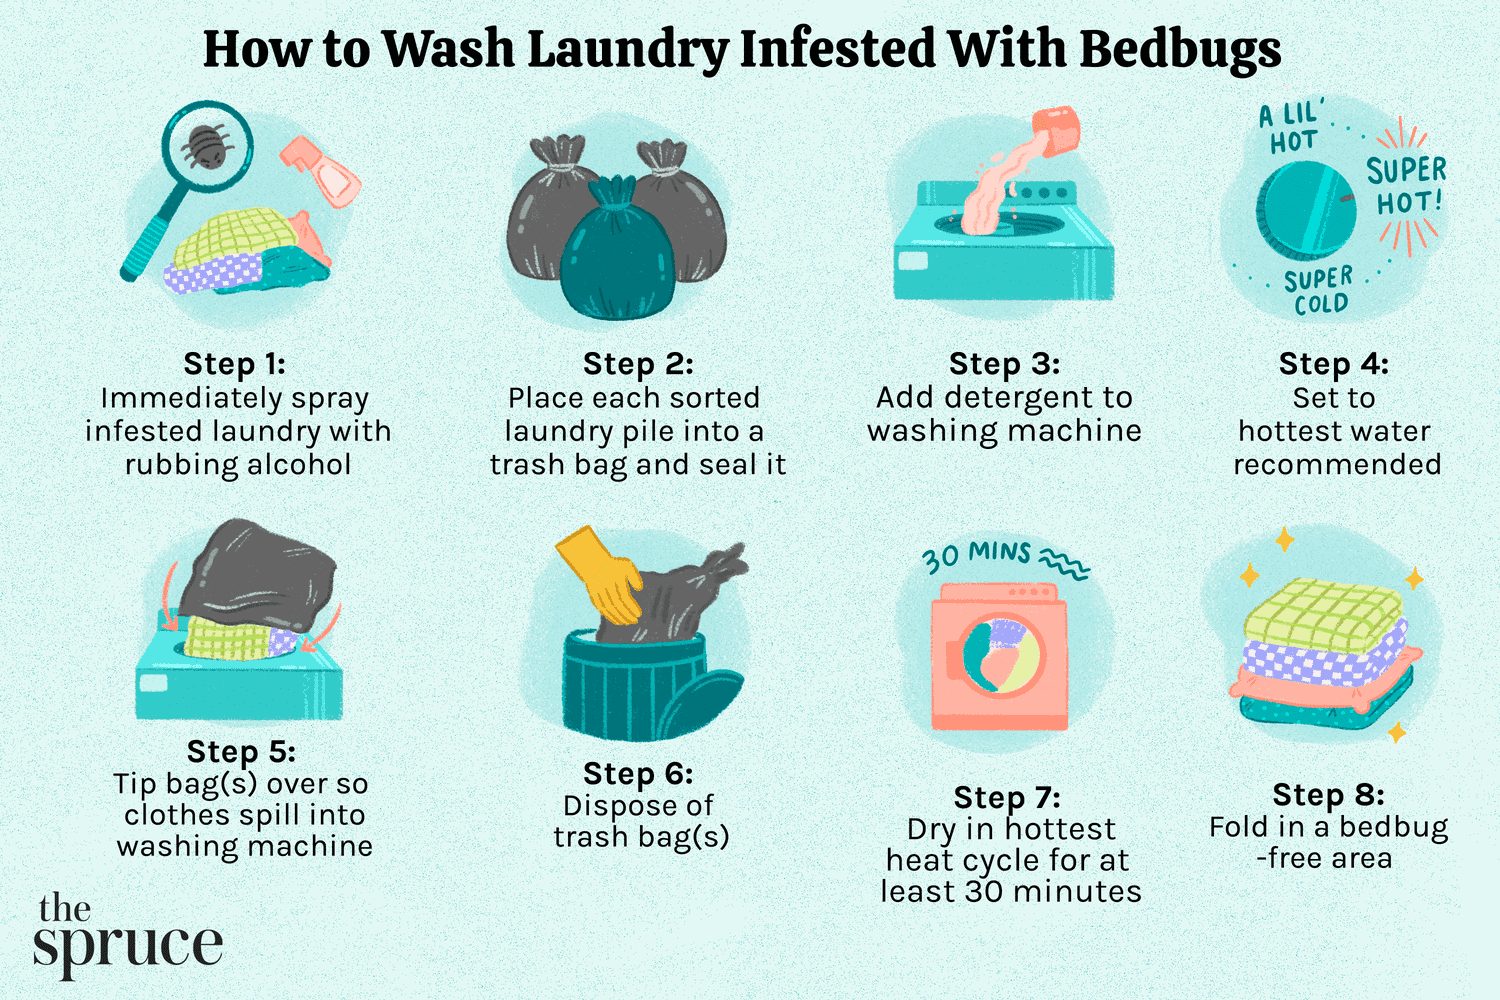 2. Aspirar y lavar la ropa de cama